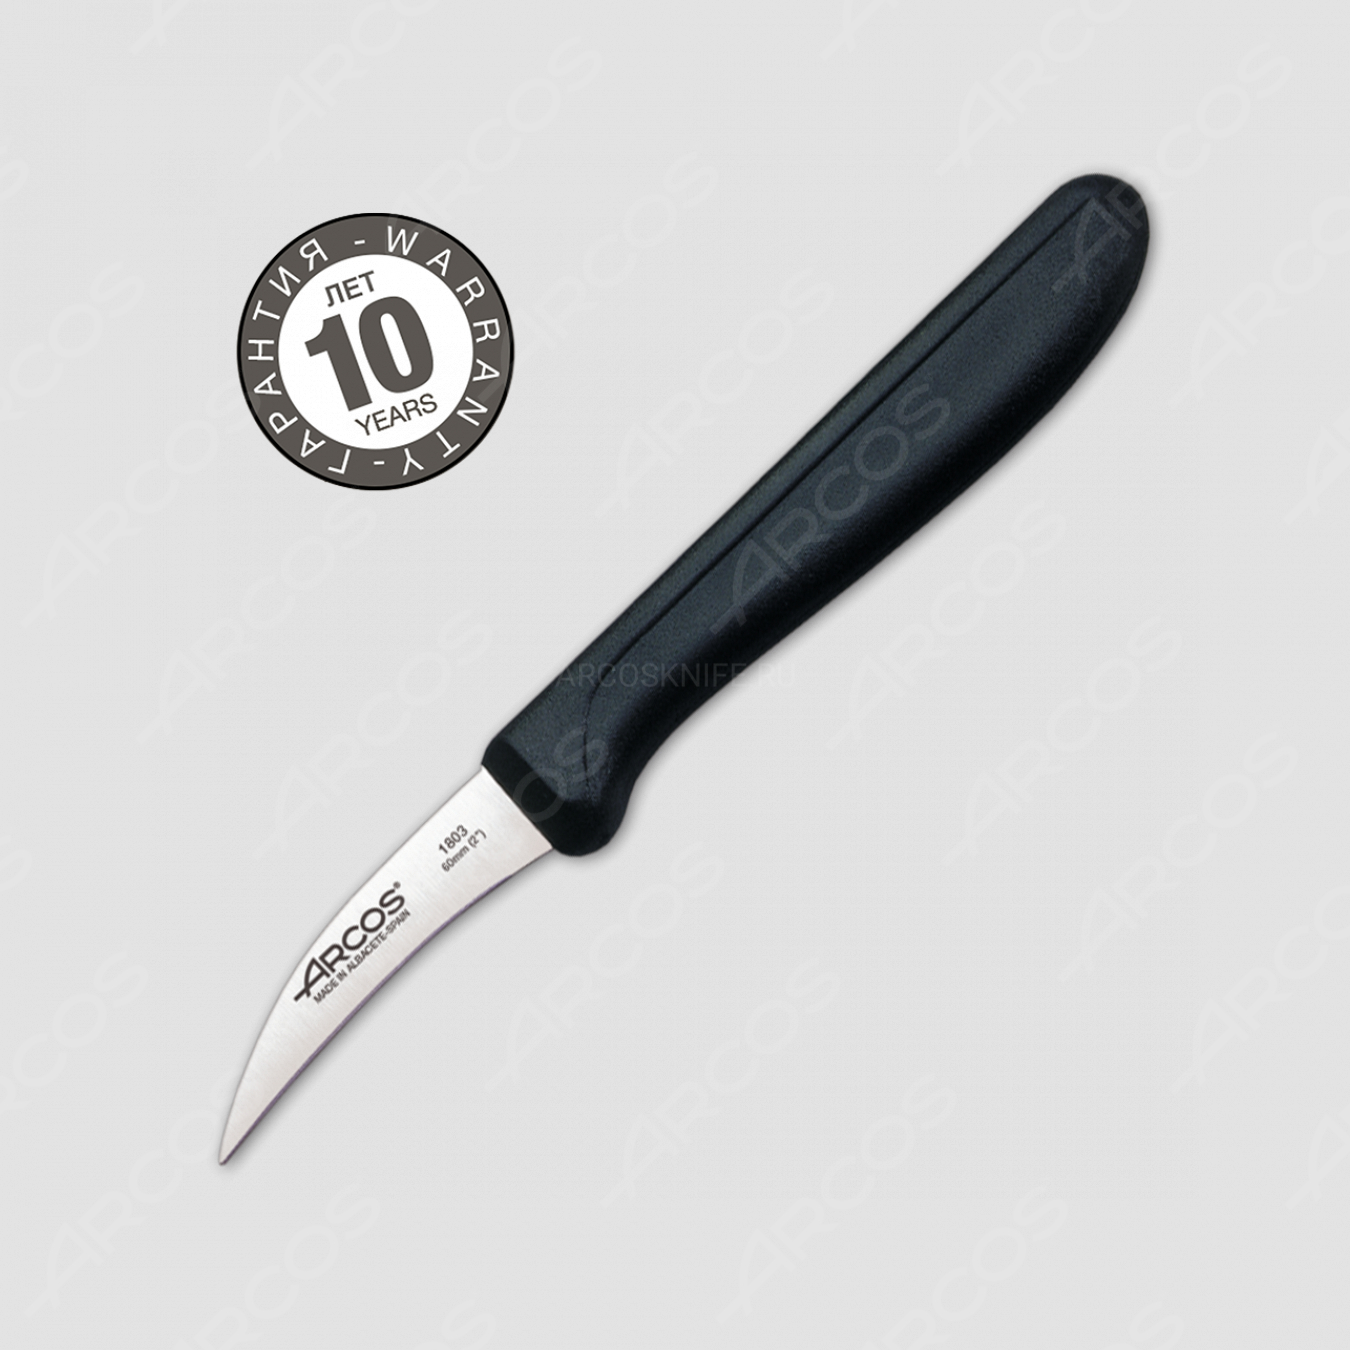 Нож кухонный для чистки и нарезки овощей 6 см, рукоять черная, серия Genova, ARCOS, Испания